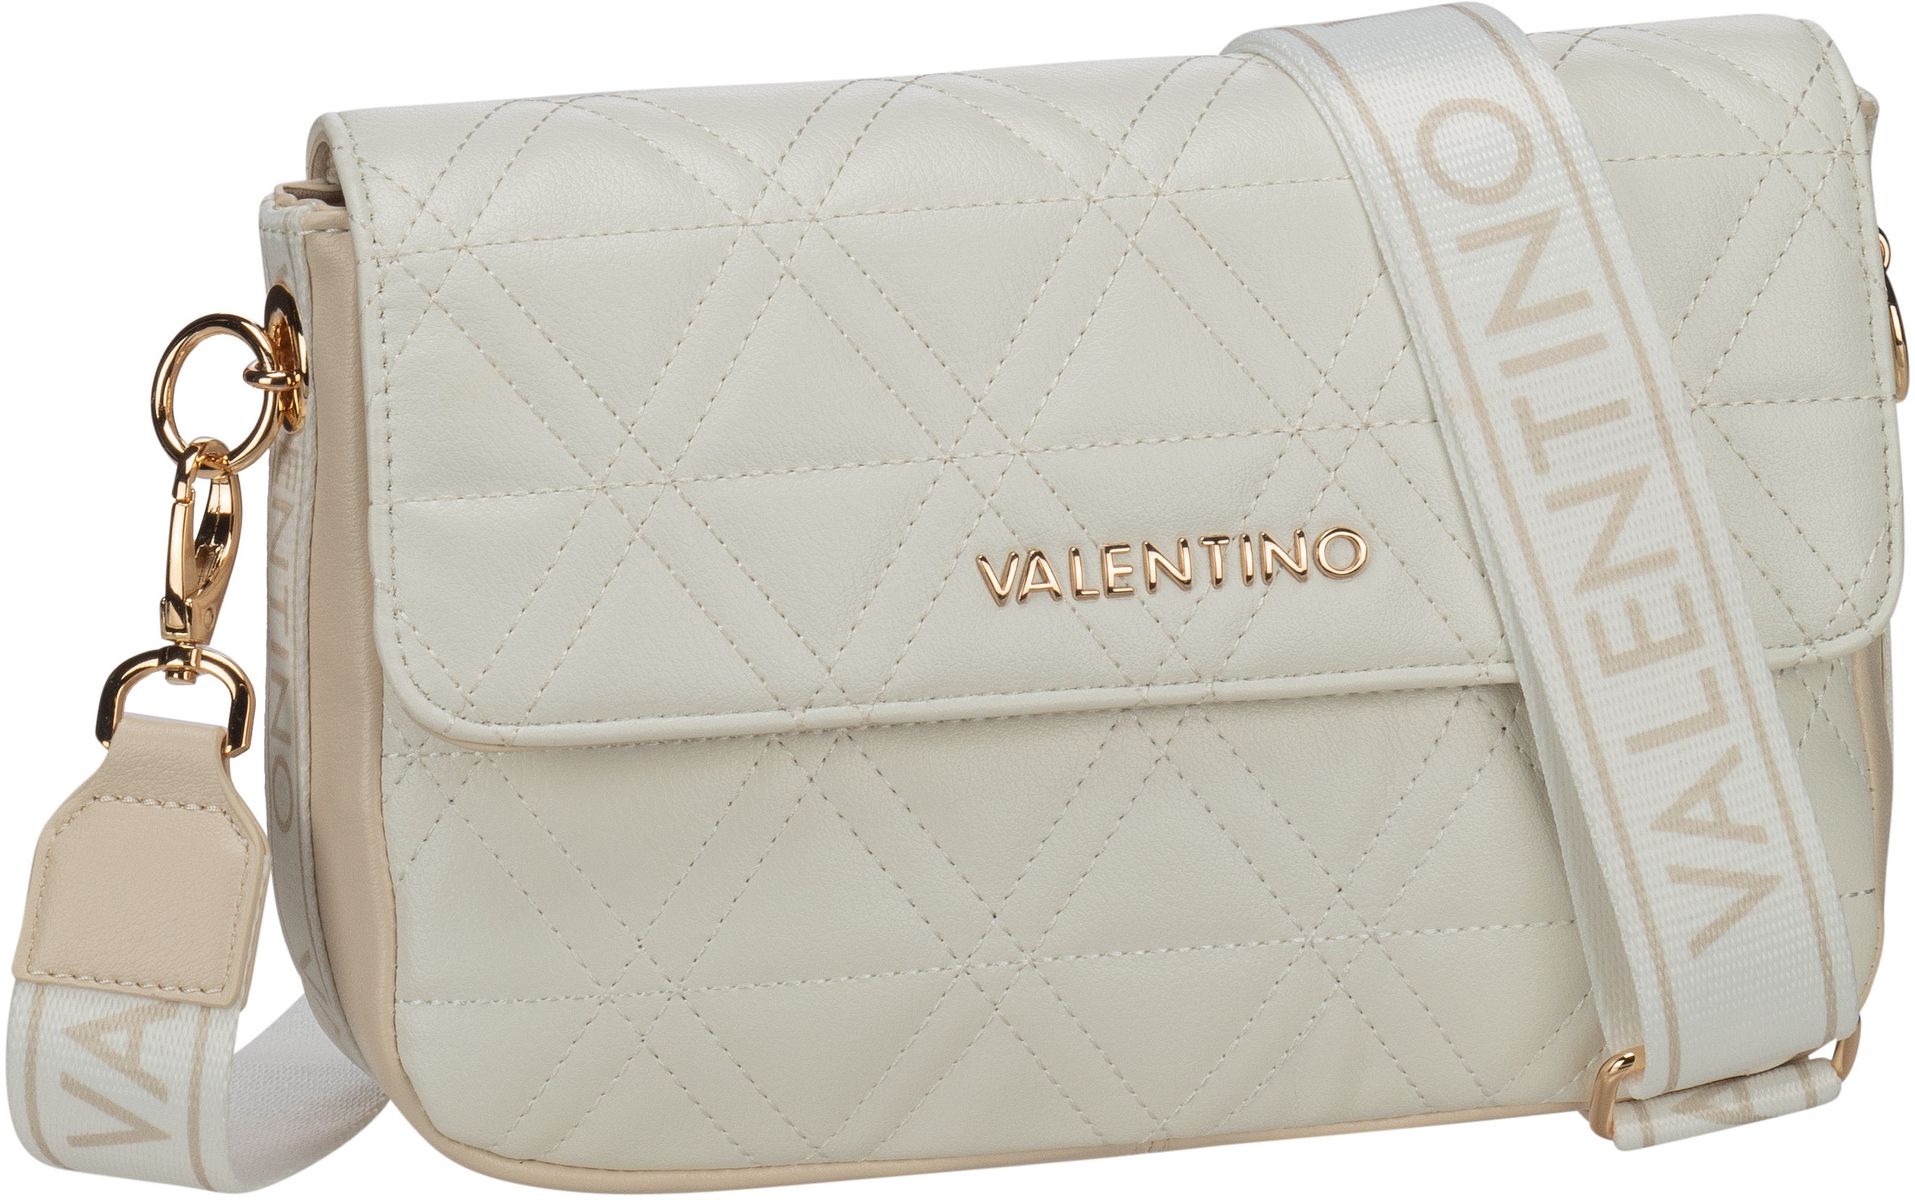 Valentino Umhängetasche Palm Re Flap Bag 704 Bianco Ecru (5 Liter)  - Onlineshop Taschenkaufhaus